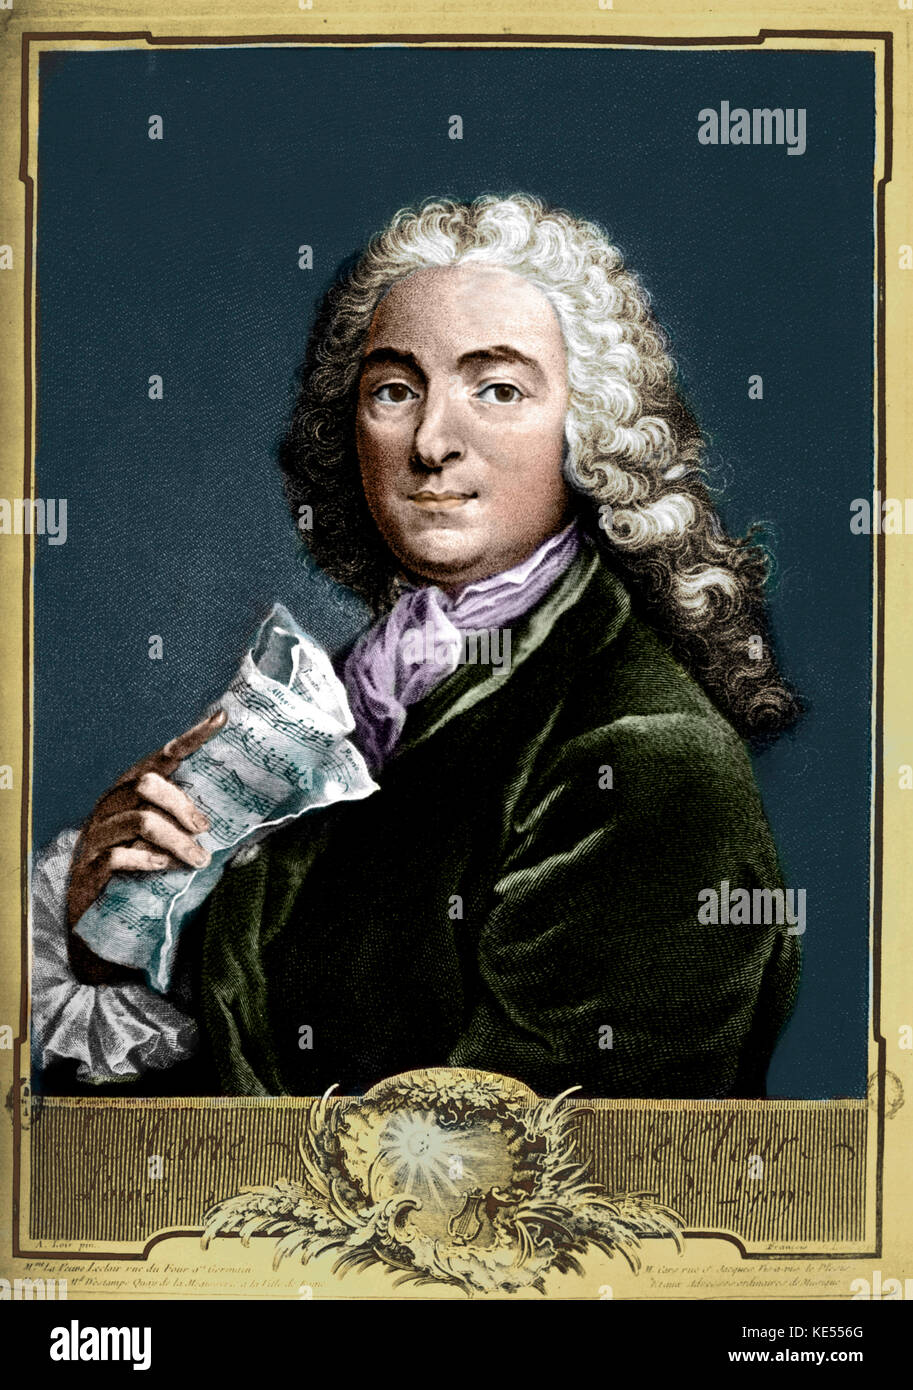 Jean Marie Leclair holding score. Le violoniste et compositeur français. 10  mai 1697 - 22 octobre 1764. Version colorisée Photo Stock - Alamy